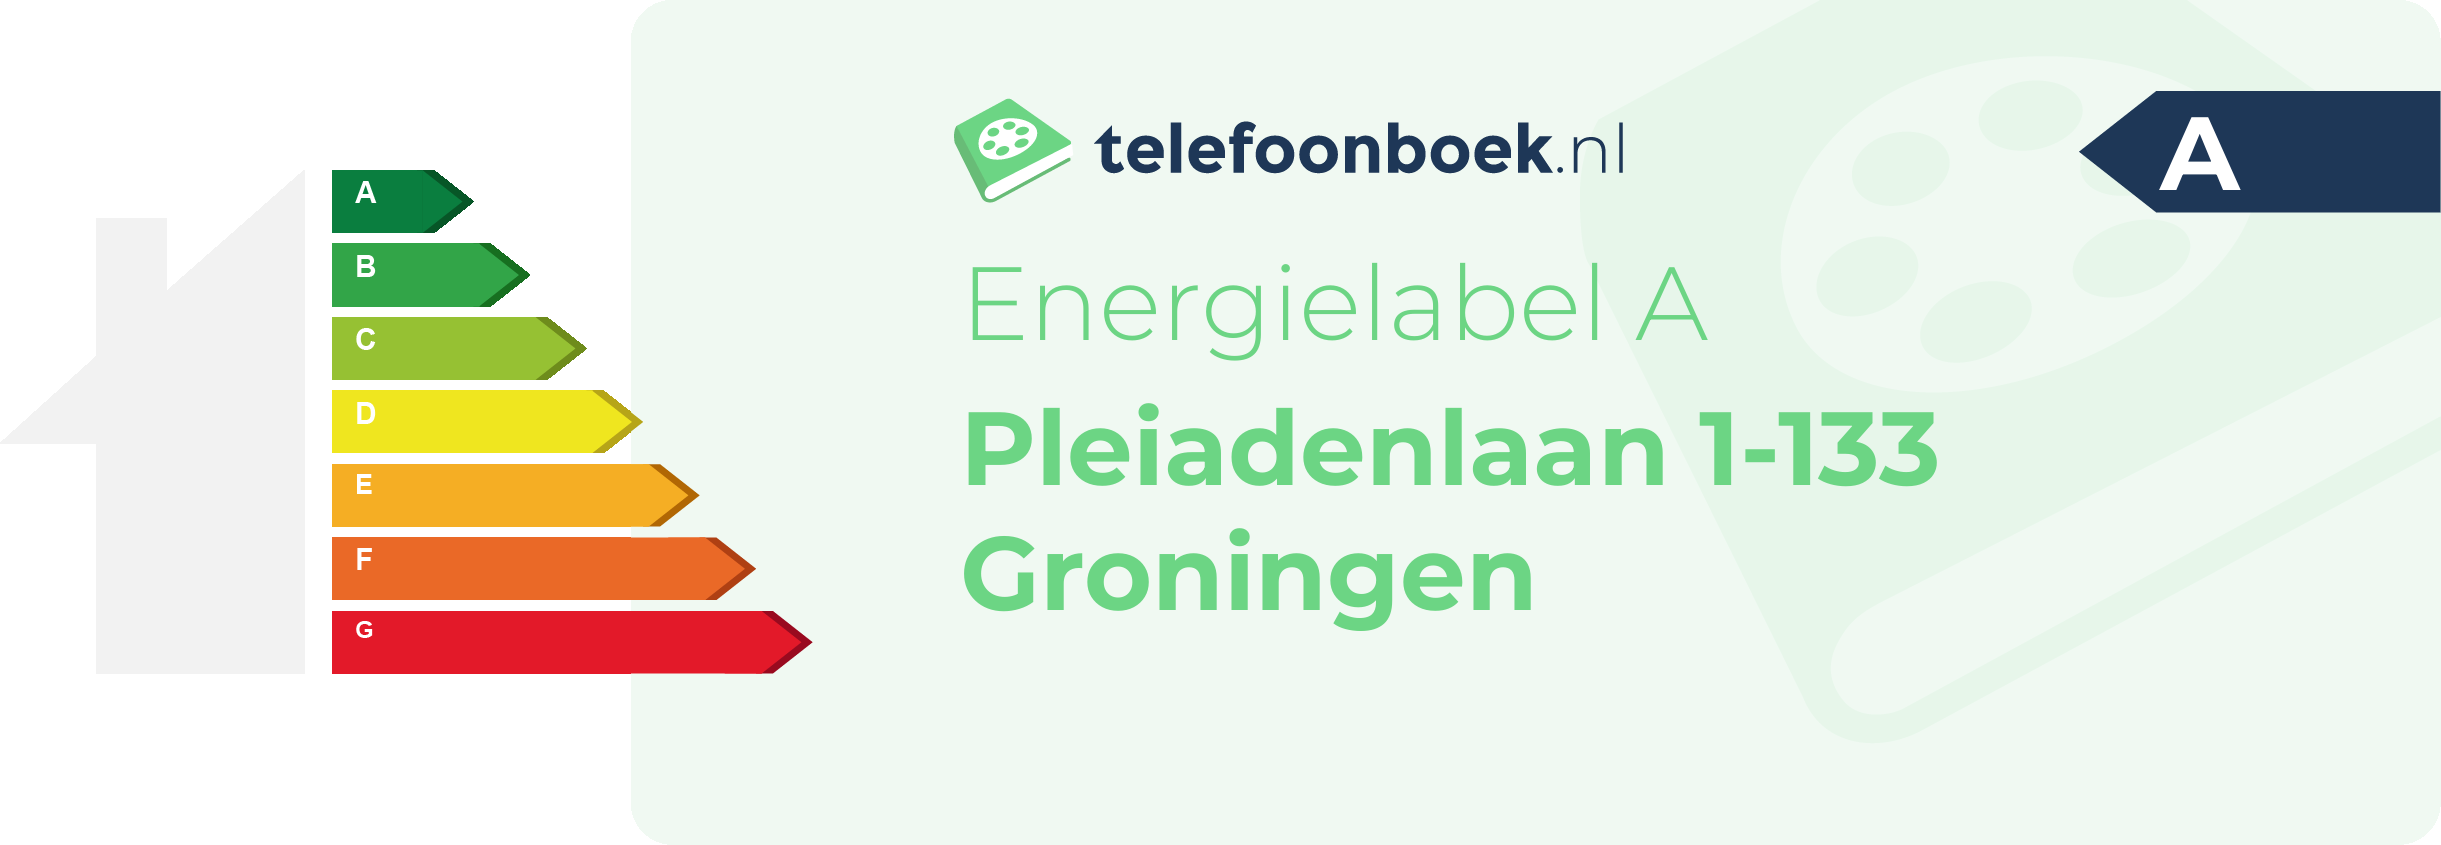 Energielabel Pleiadenlaan 1-133 Groningen